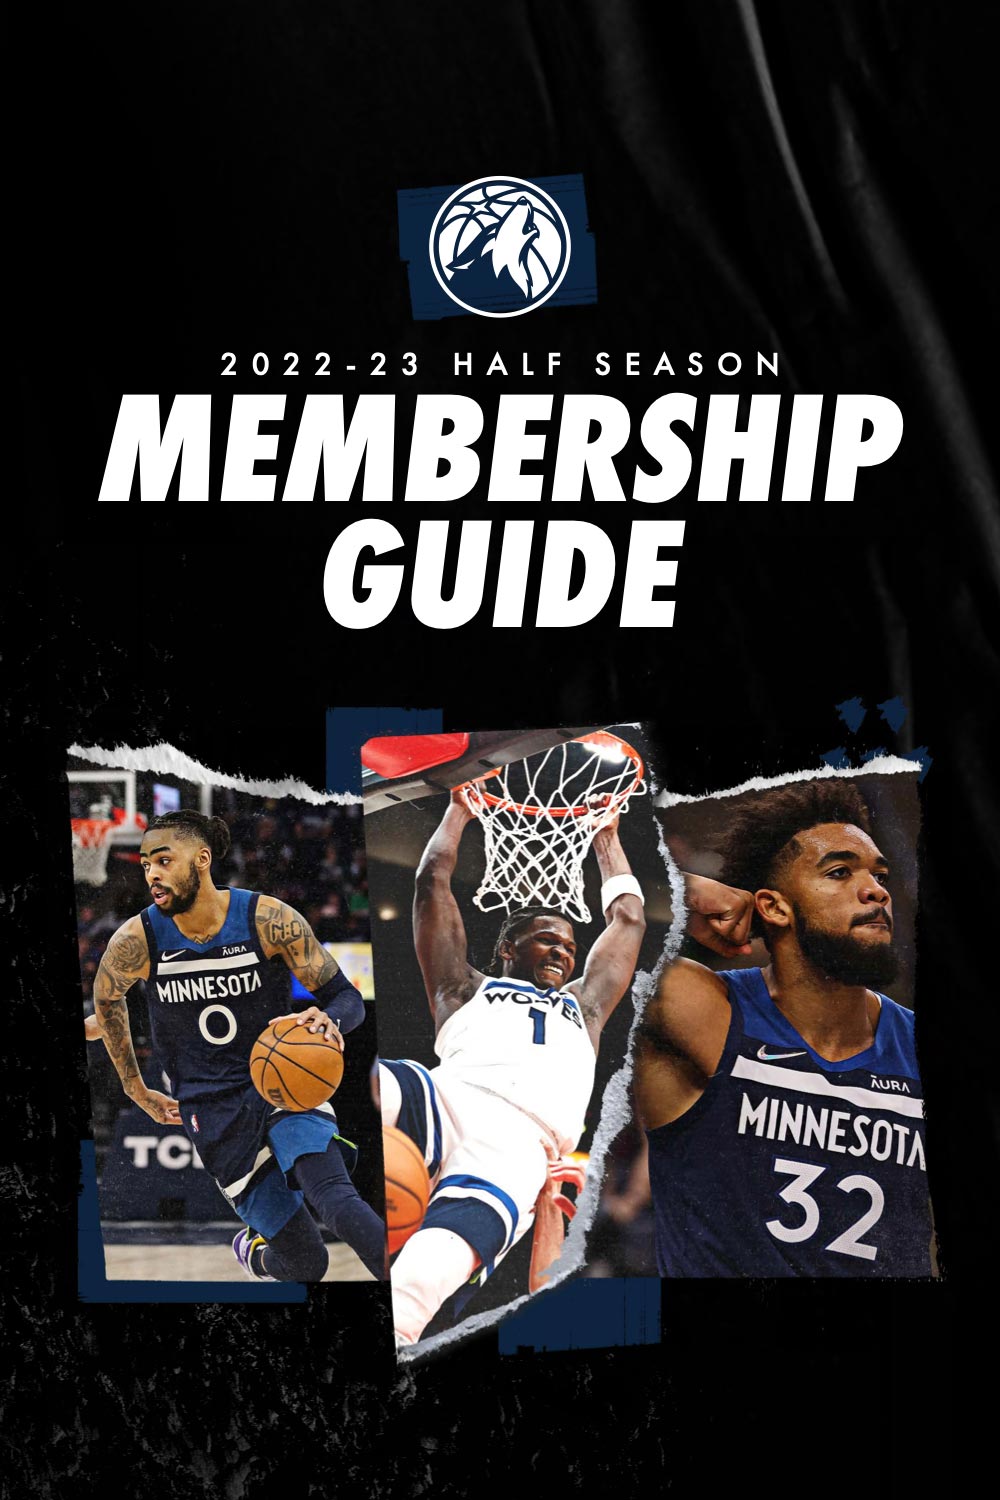 2022-23 Half Season Membership Guide